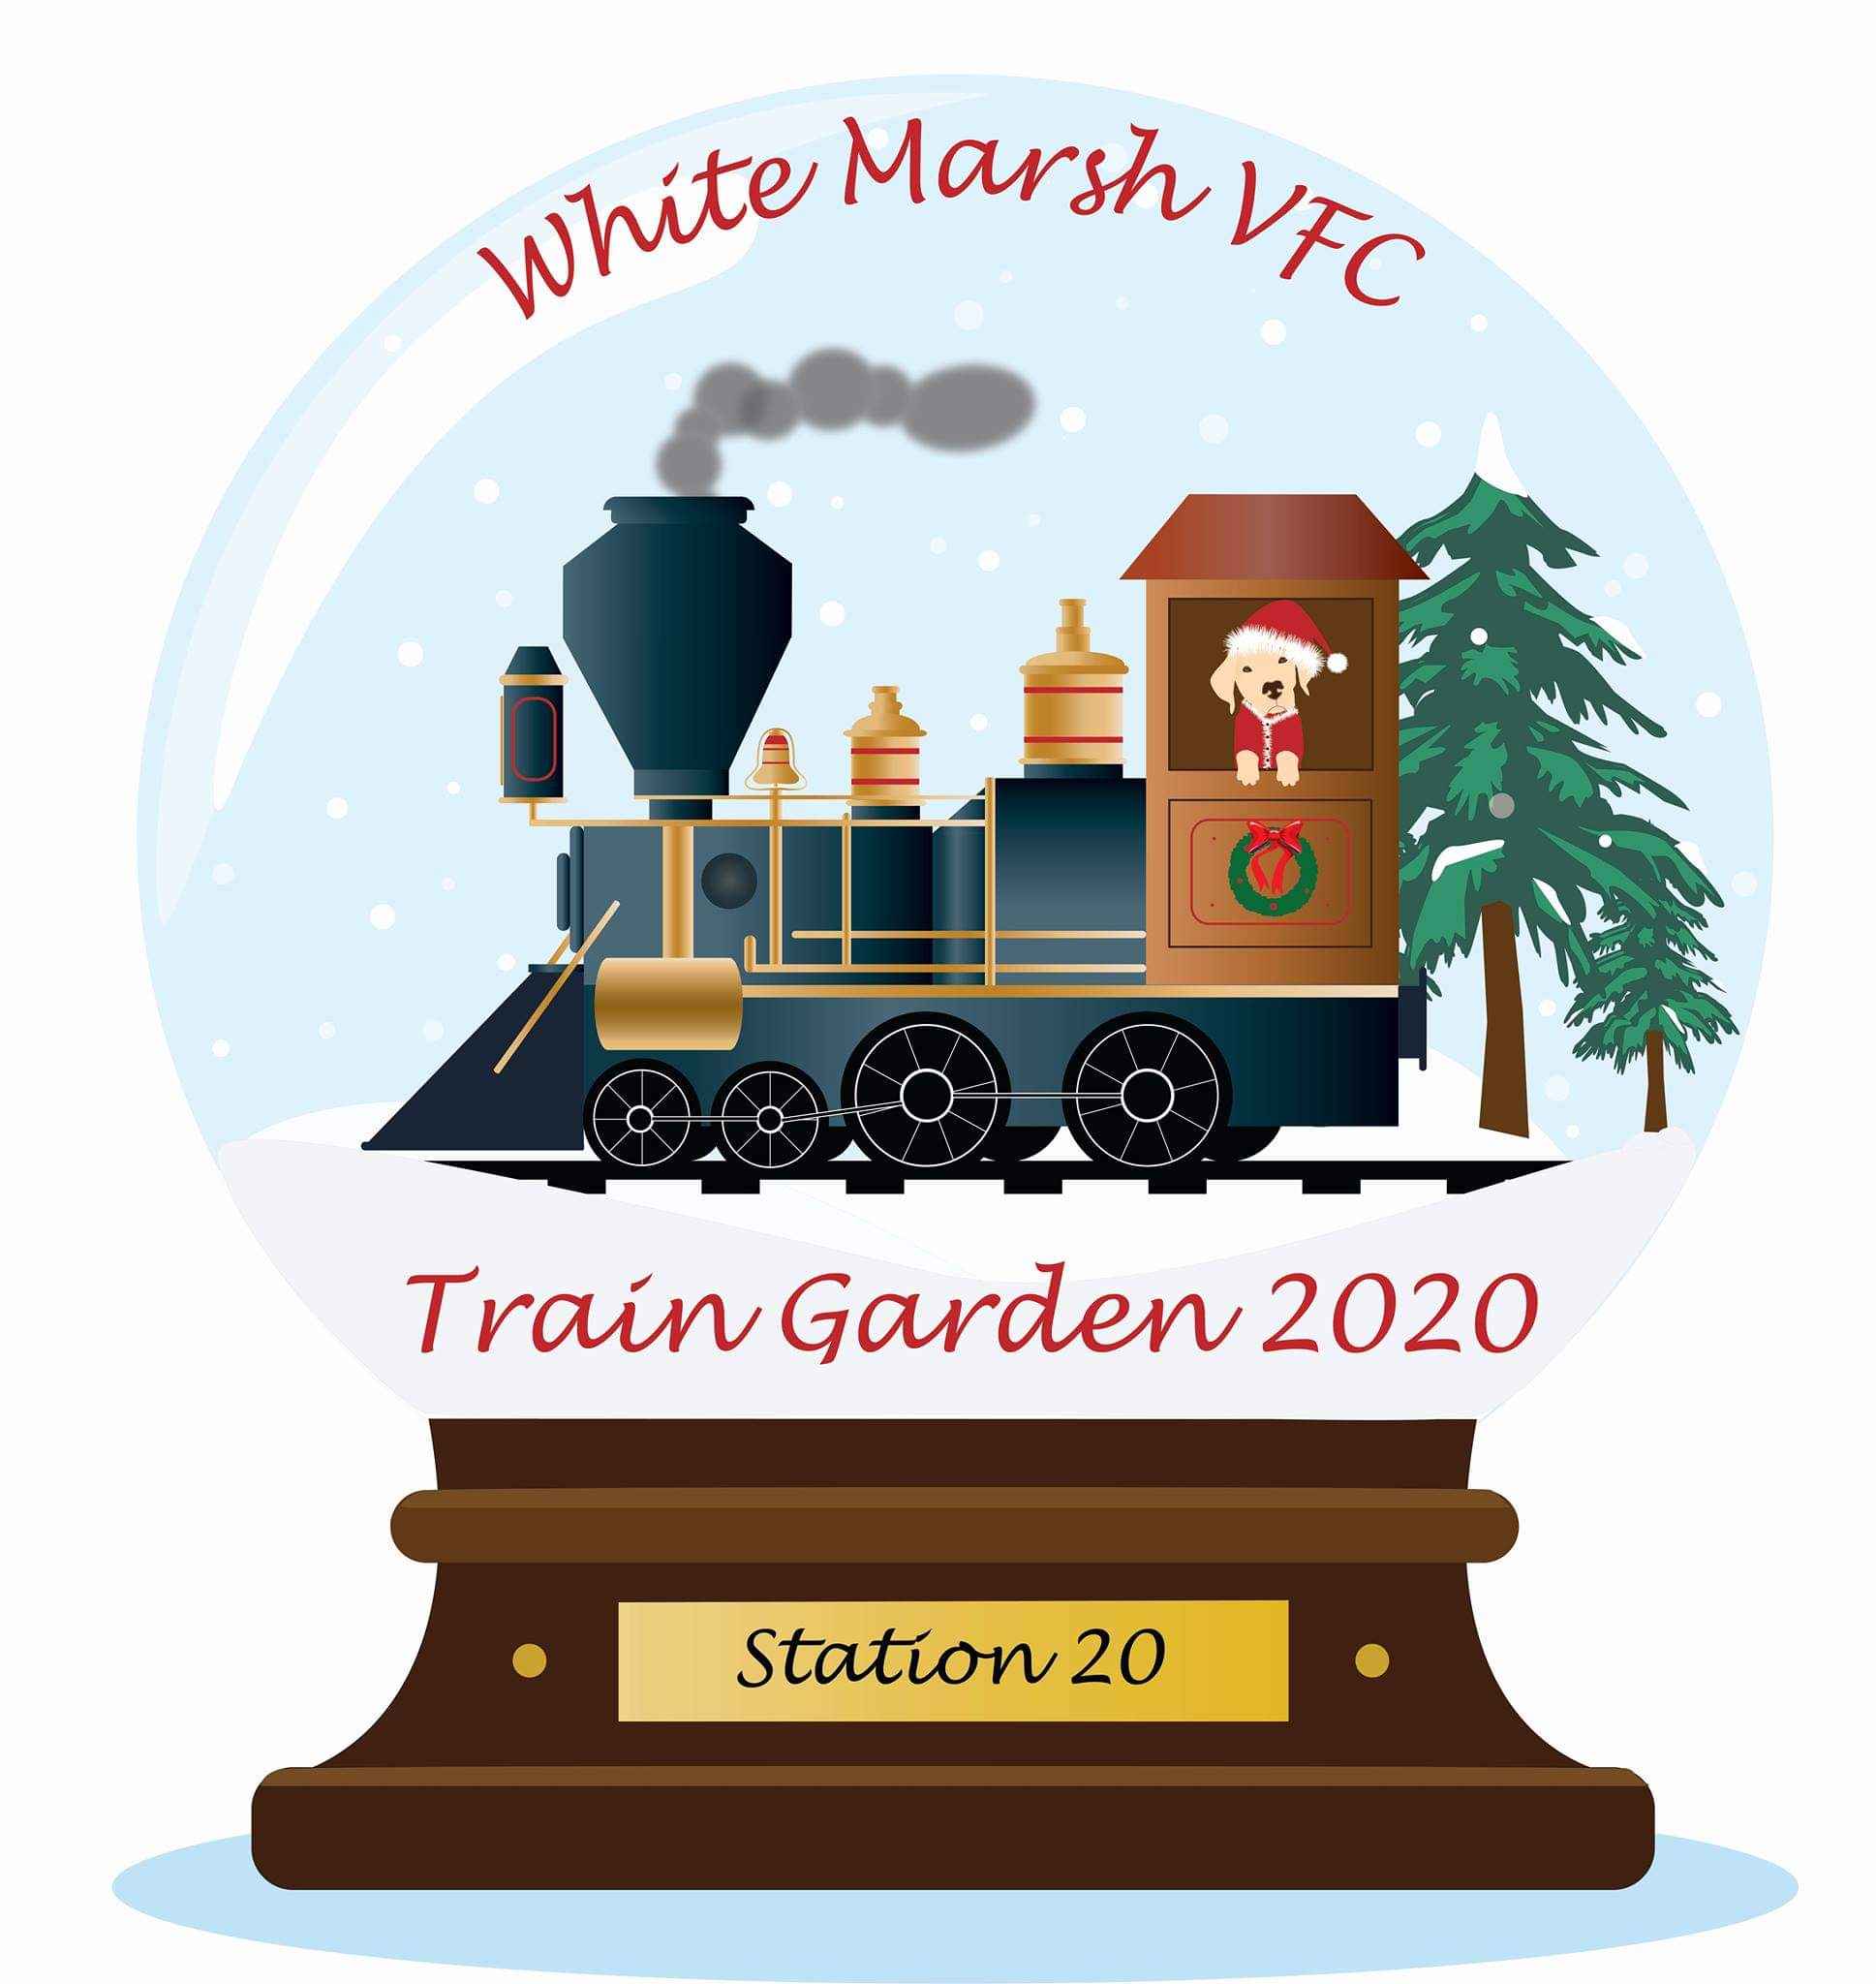 White Marsh VFC Train Garden Now Open